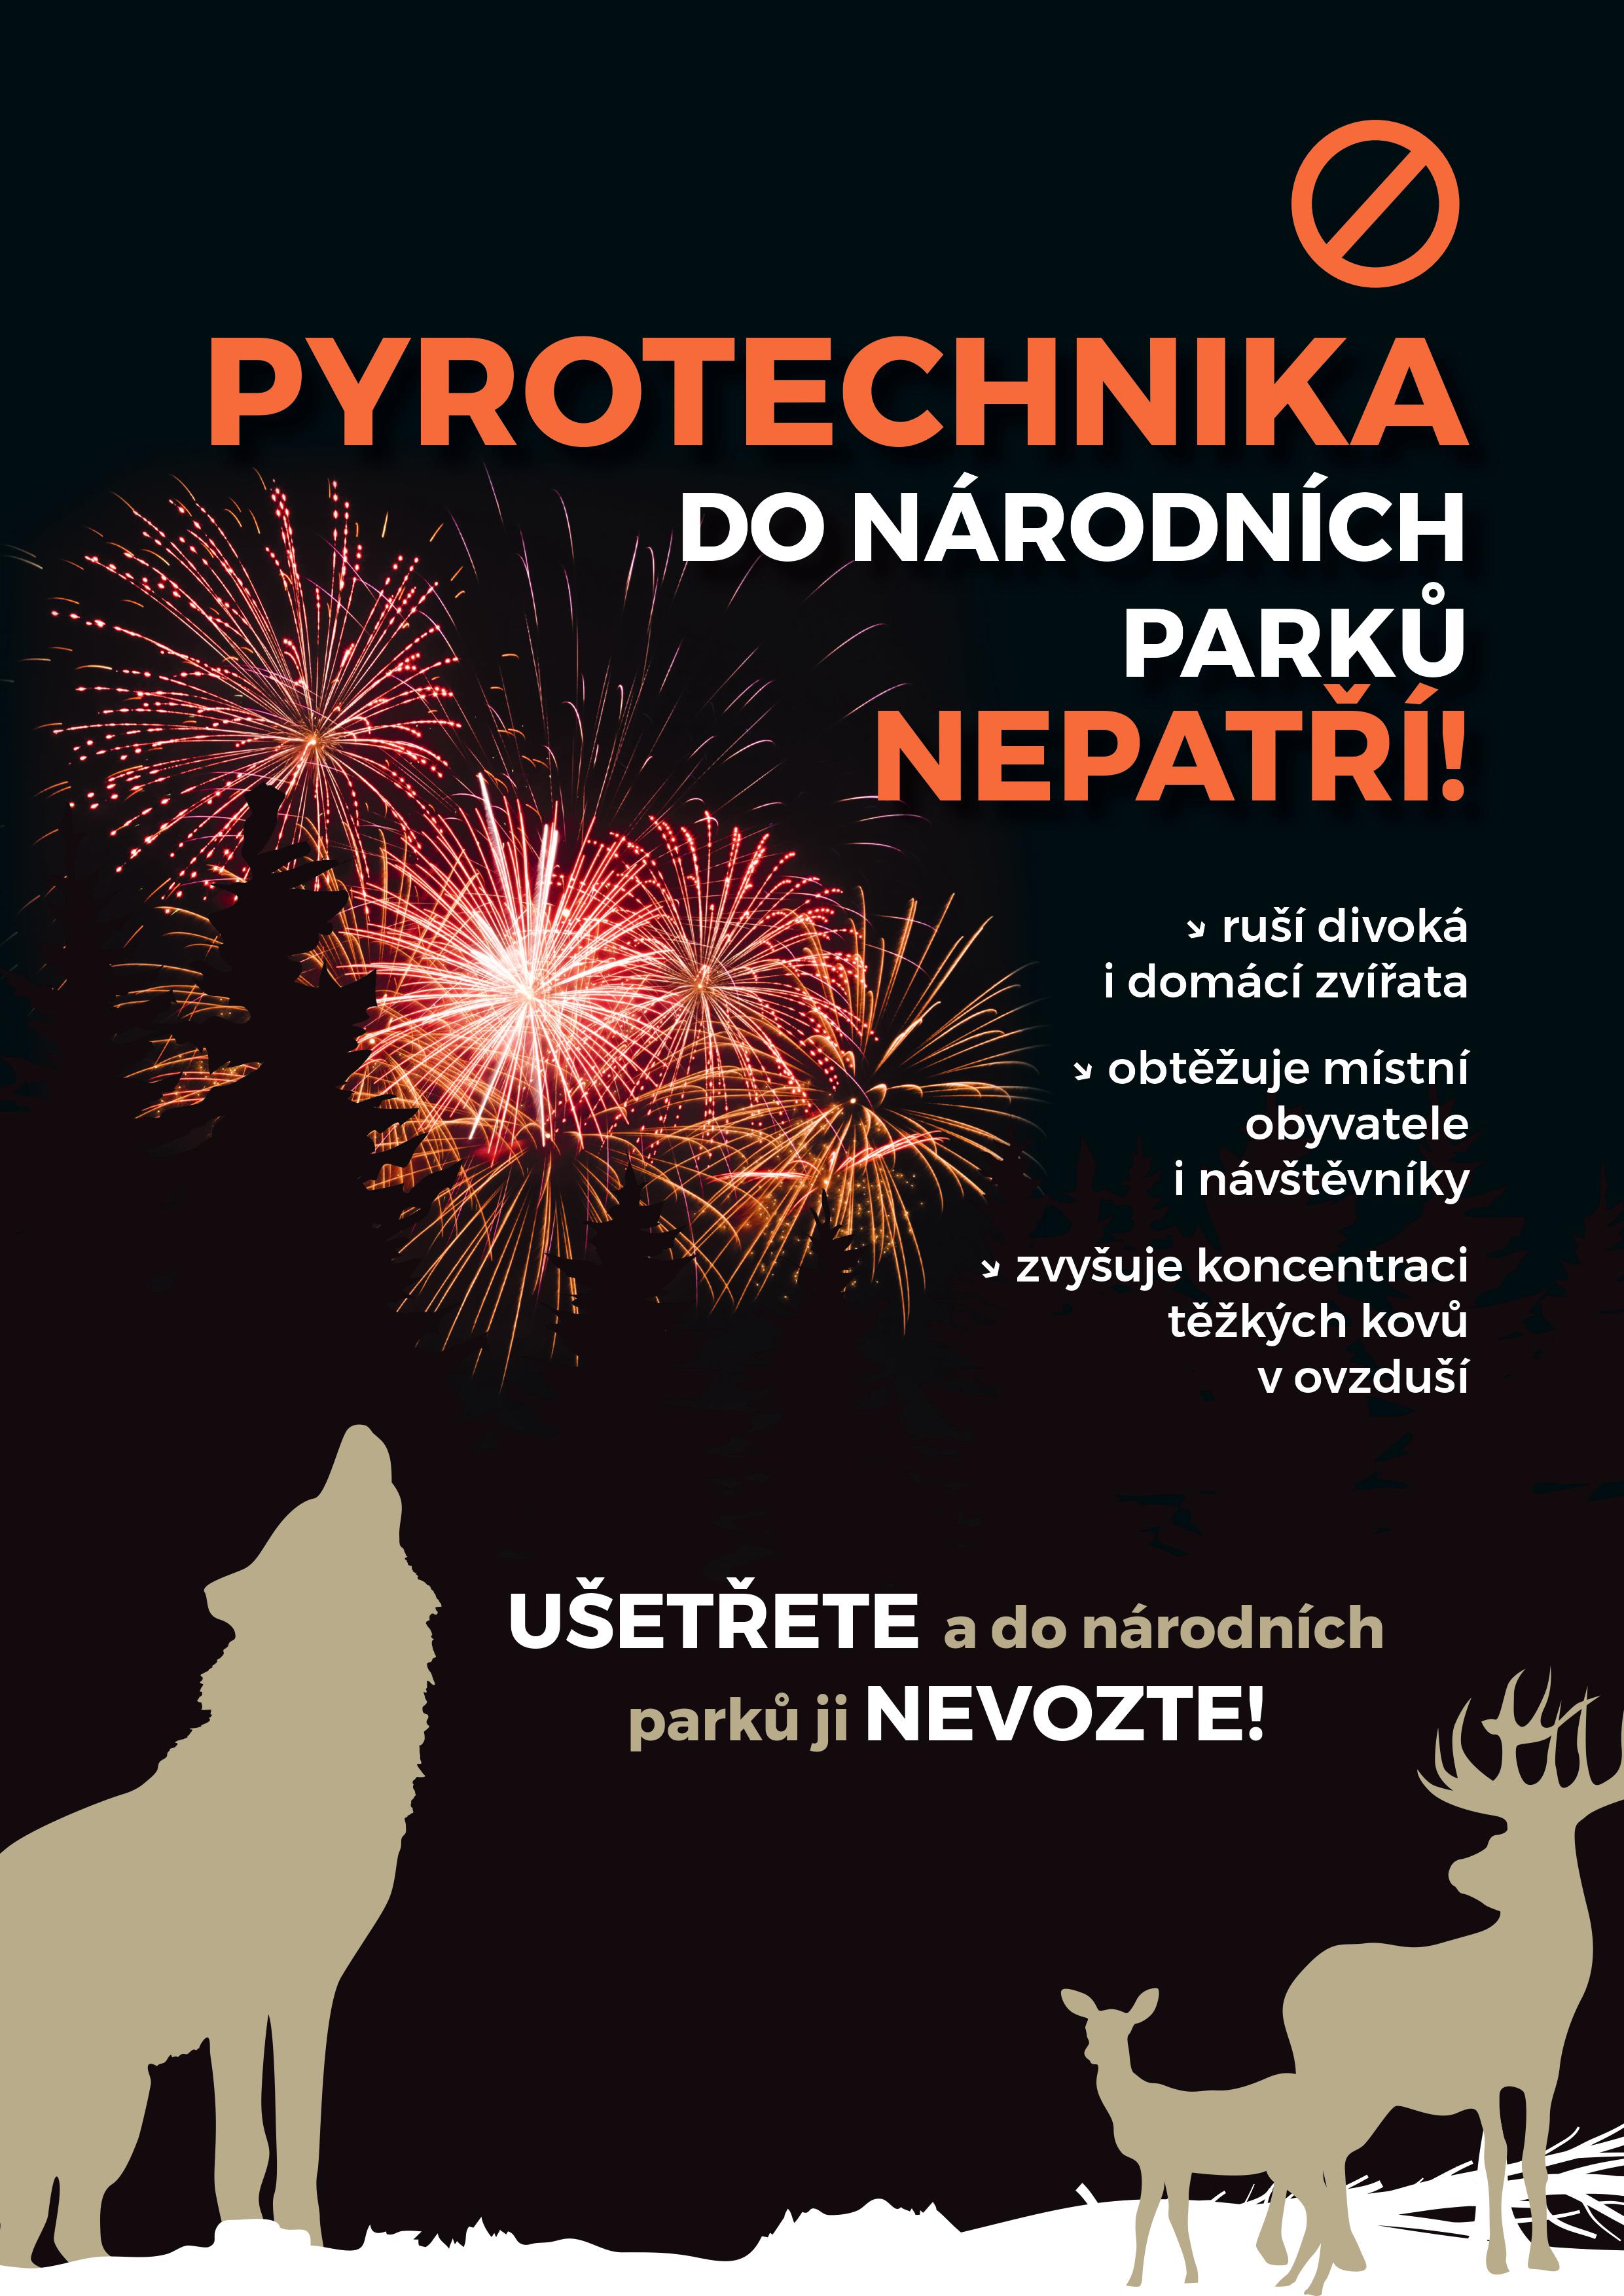 Plakát pro rok 2019: Pyrotechnika do národního parku nepatří